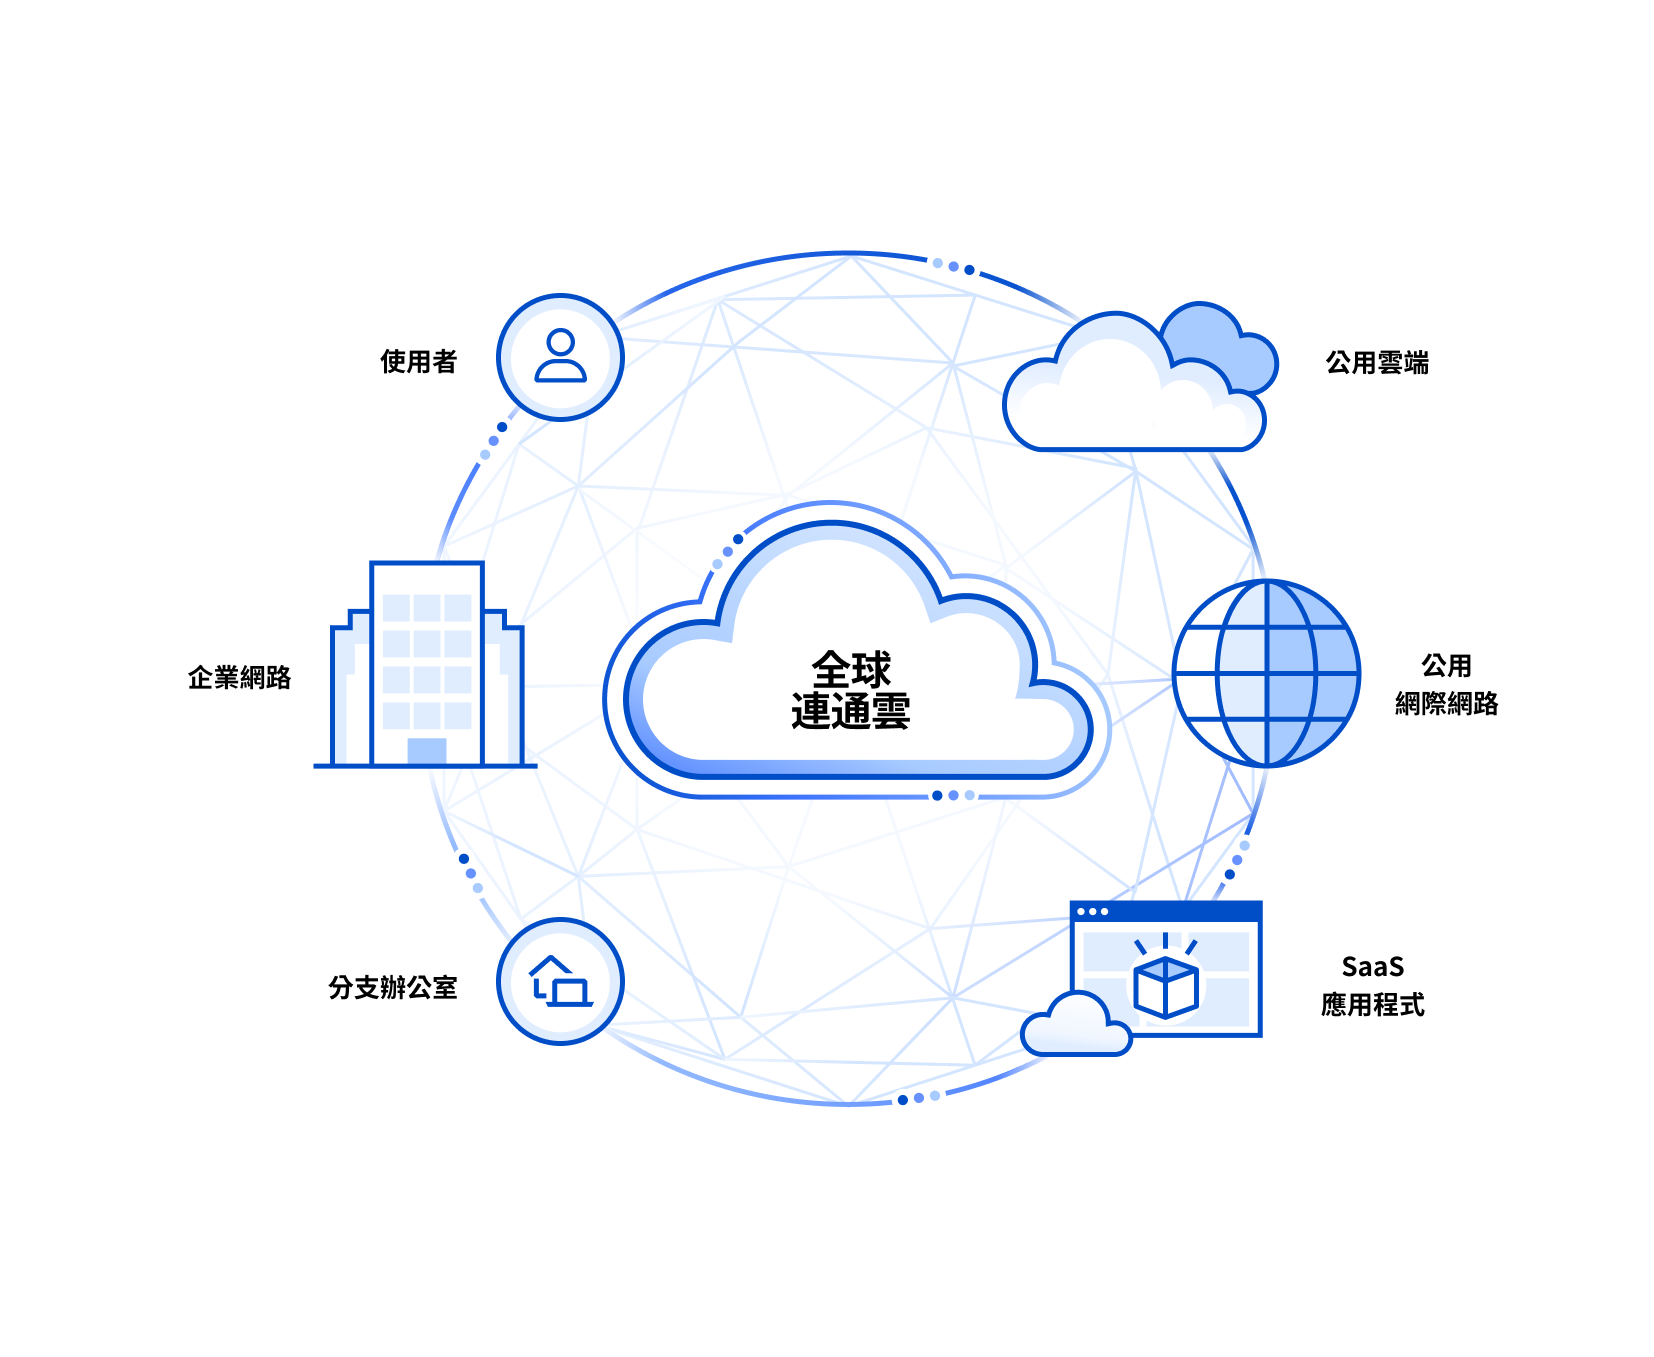 Blueprint Connectivity Cloud - After